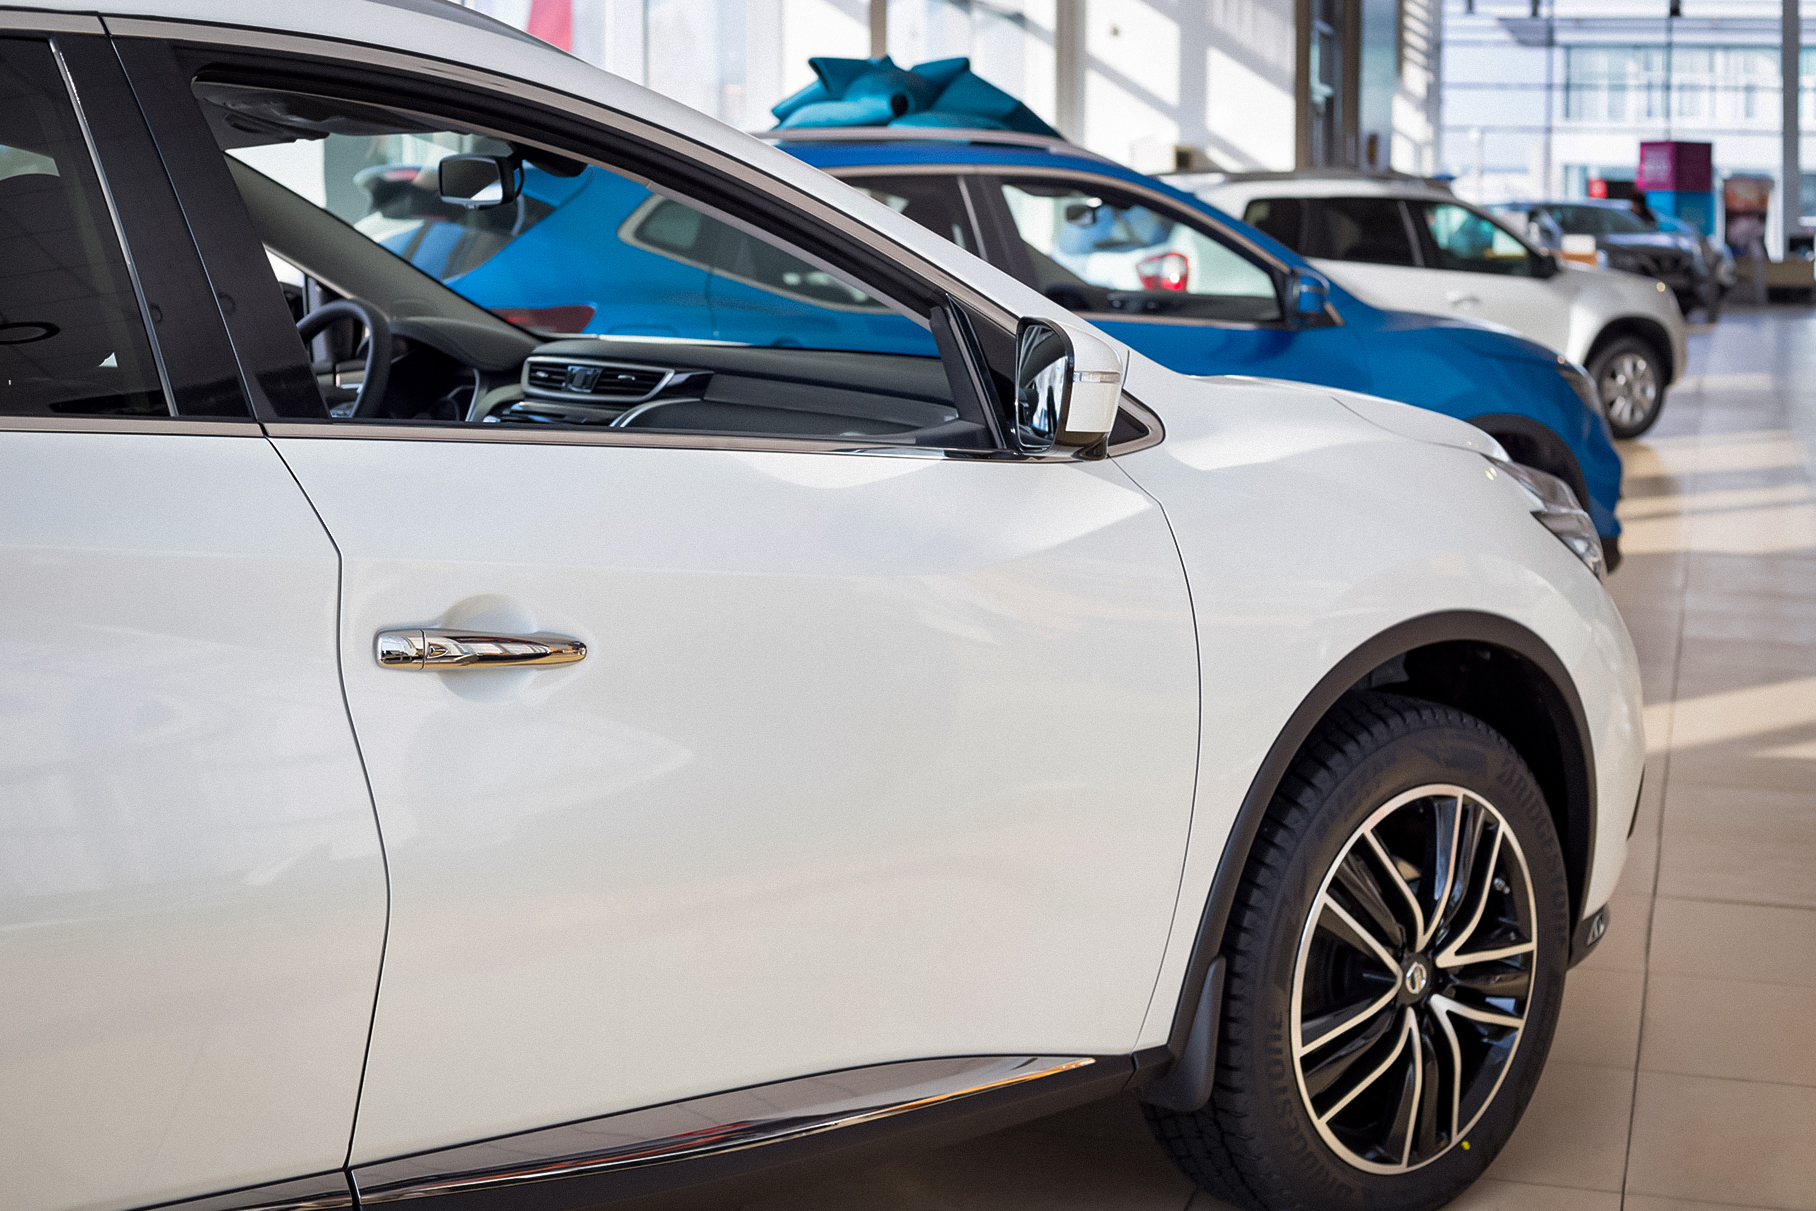 Компания Nissan заявила, что вопросами гарантийного ремонта машин в России занимается АвтоВАЗ